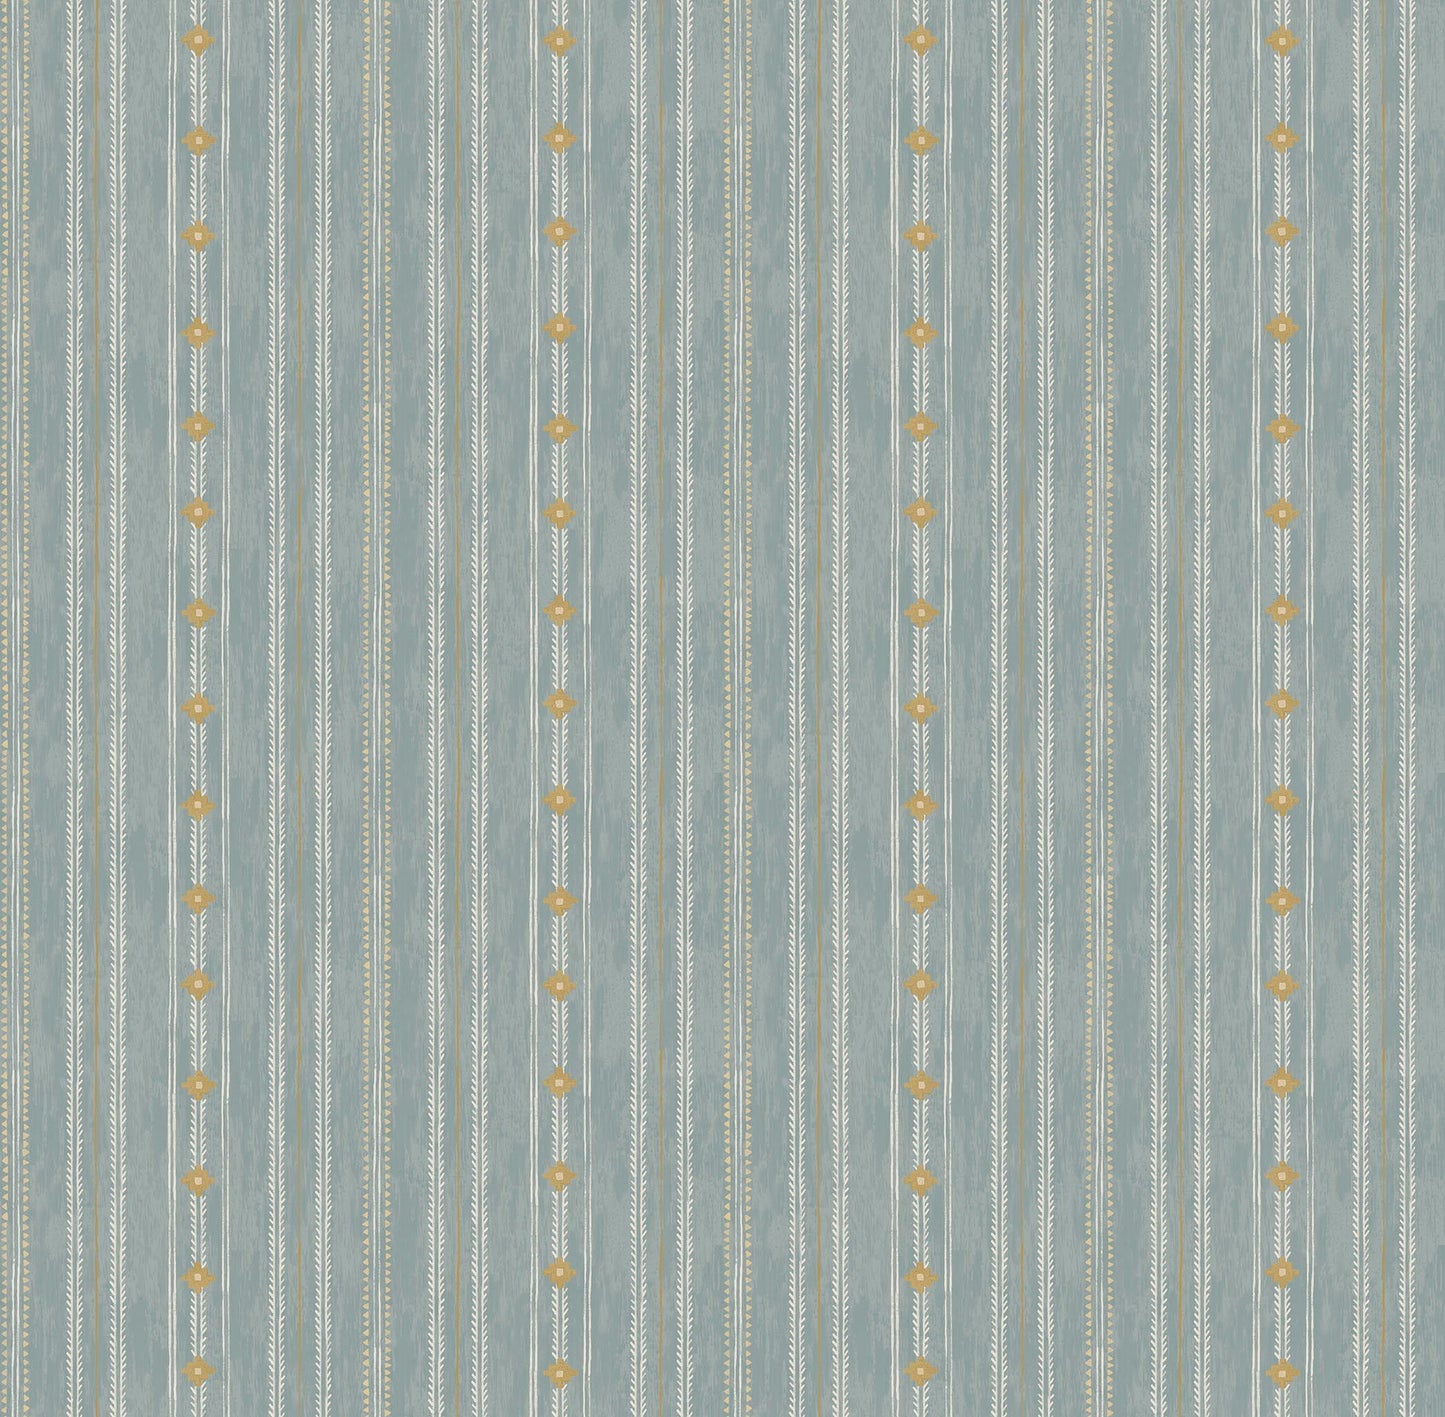 Arrow Stitch Wallpaper - Blue Ridge